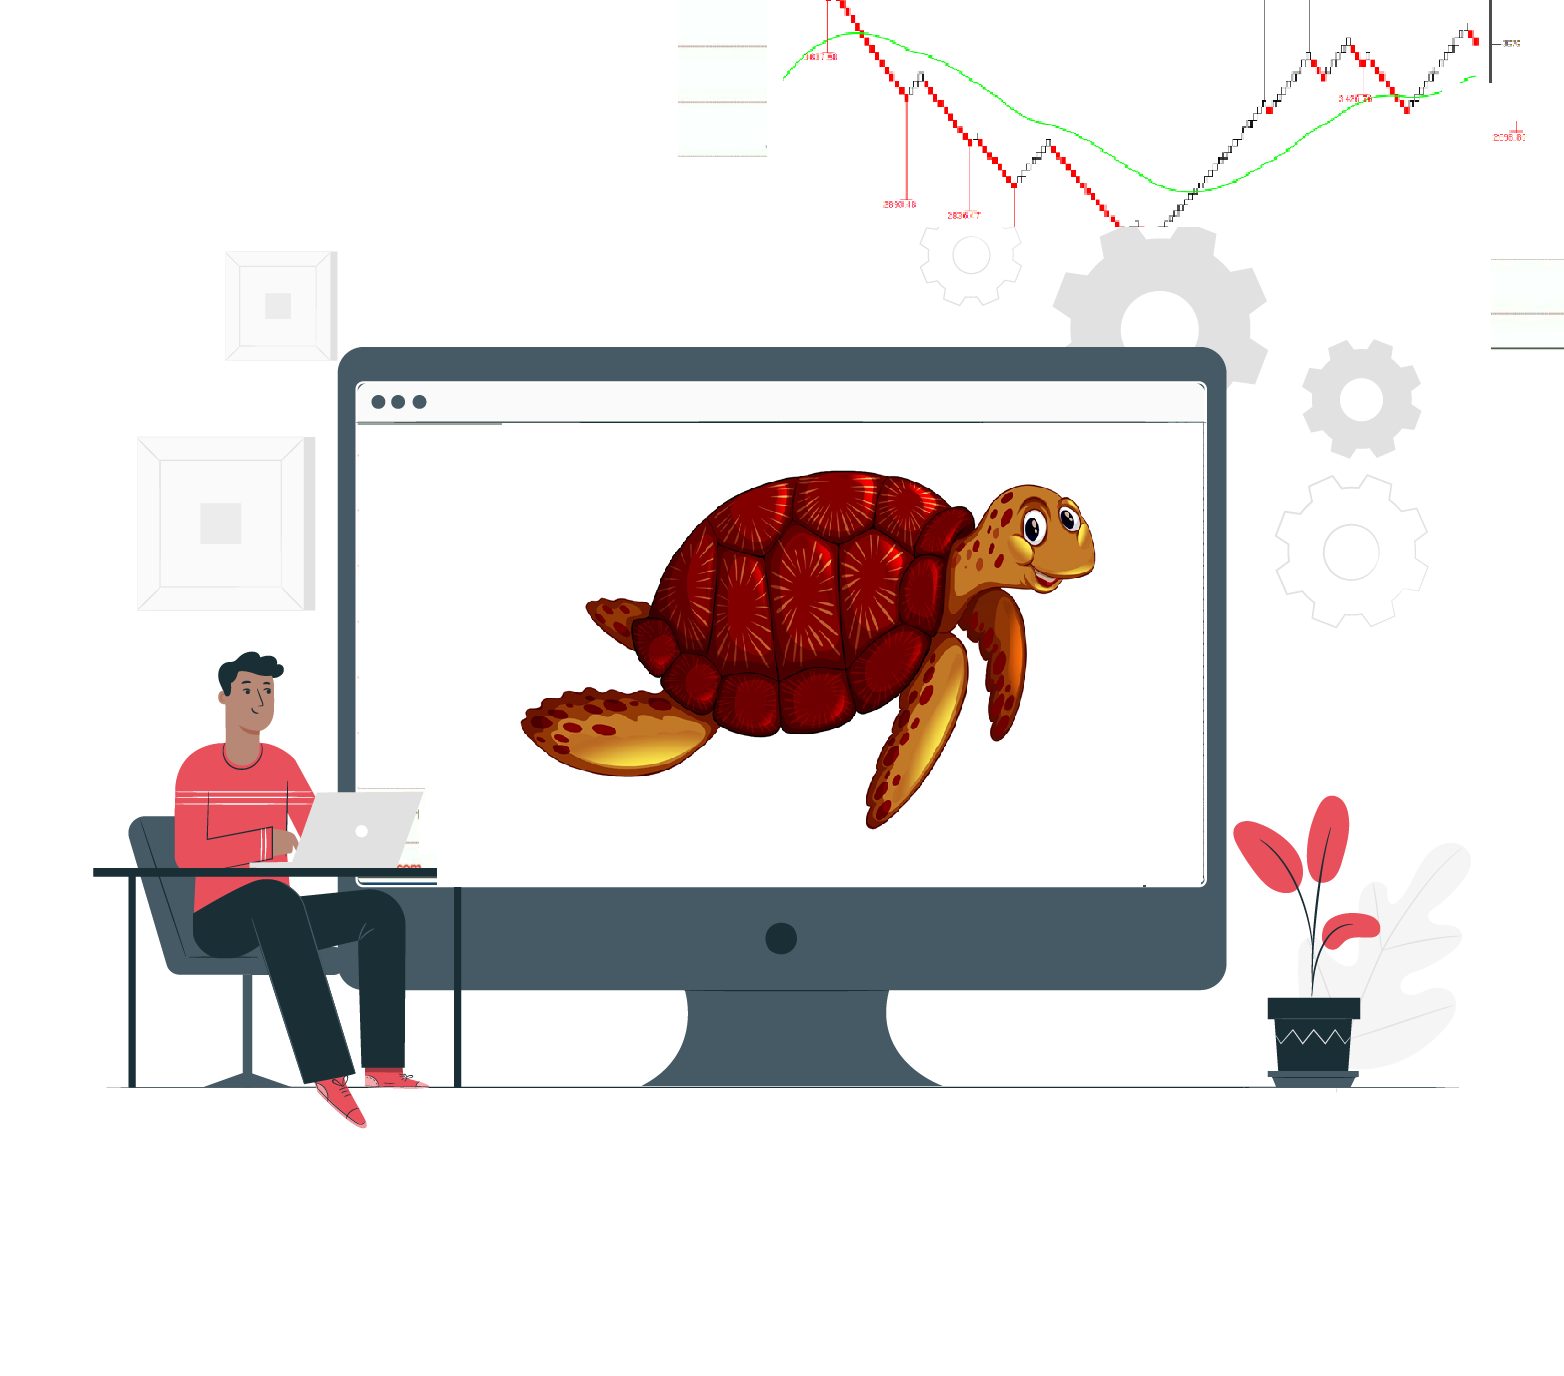 Turtle Trading System Explained (Hindi)